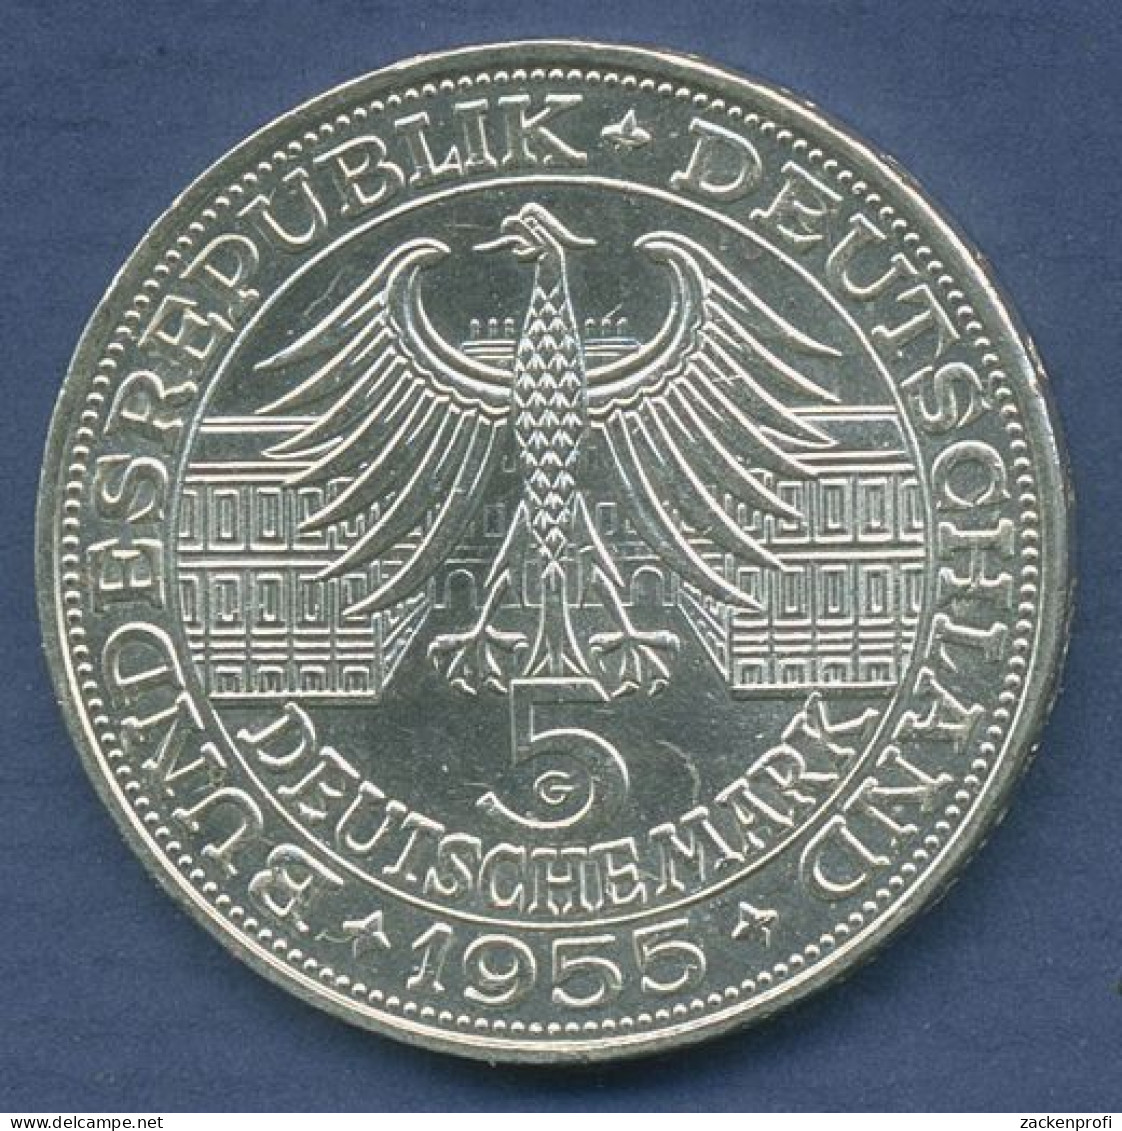 Deutschland 5 DM 1955 Markgraf Von Baden, J 390 Vz (m6448) - 5 Mark